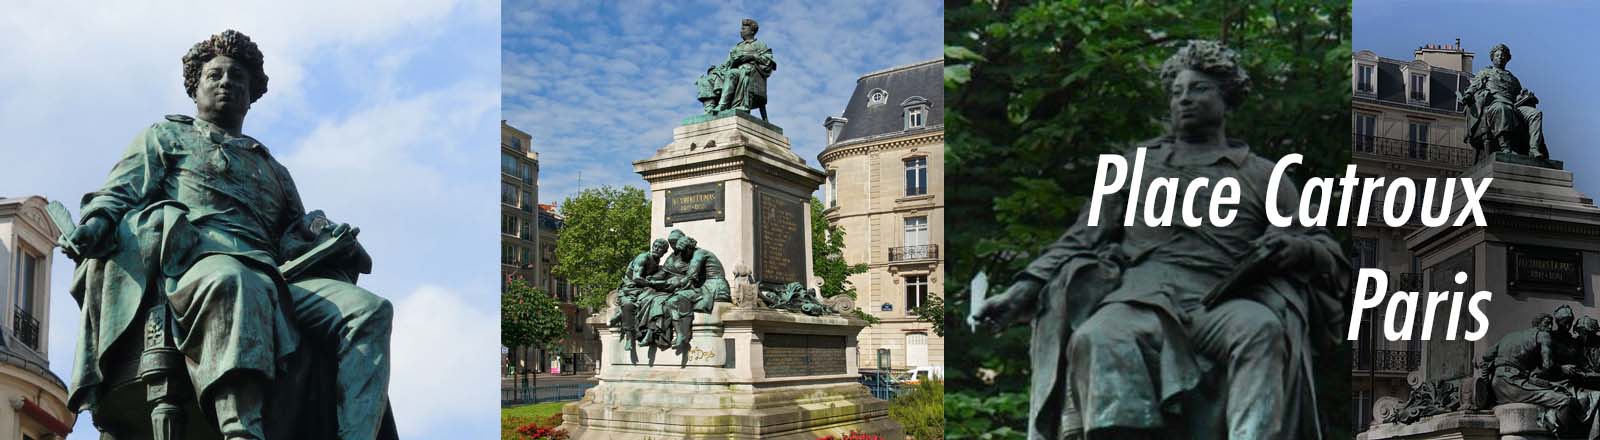 Statue d’Alexandre Dumas, place Catroux